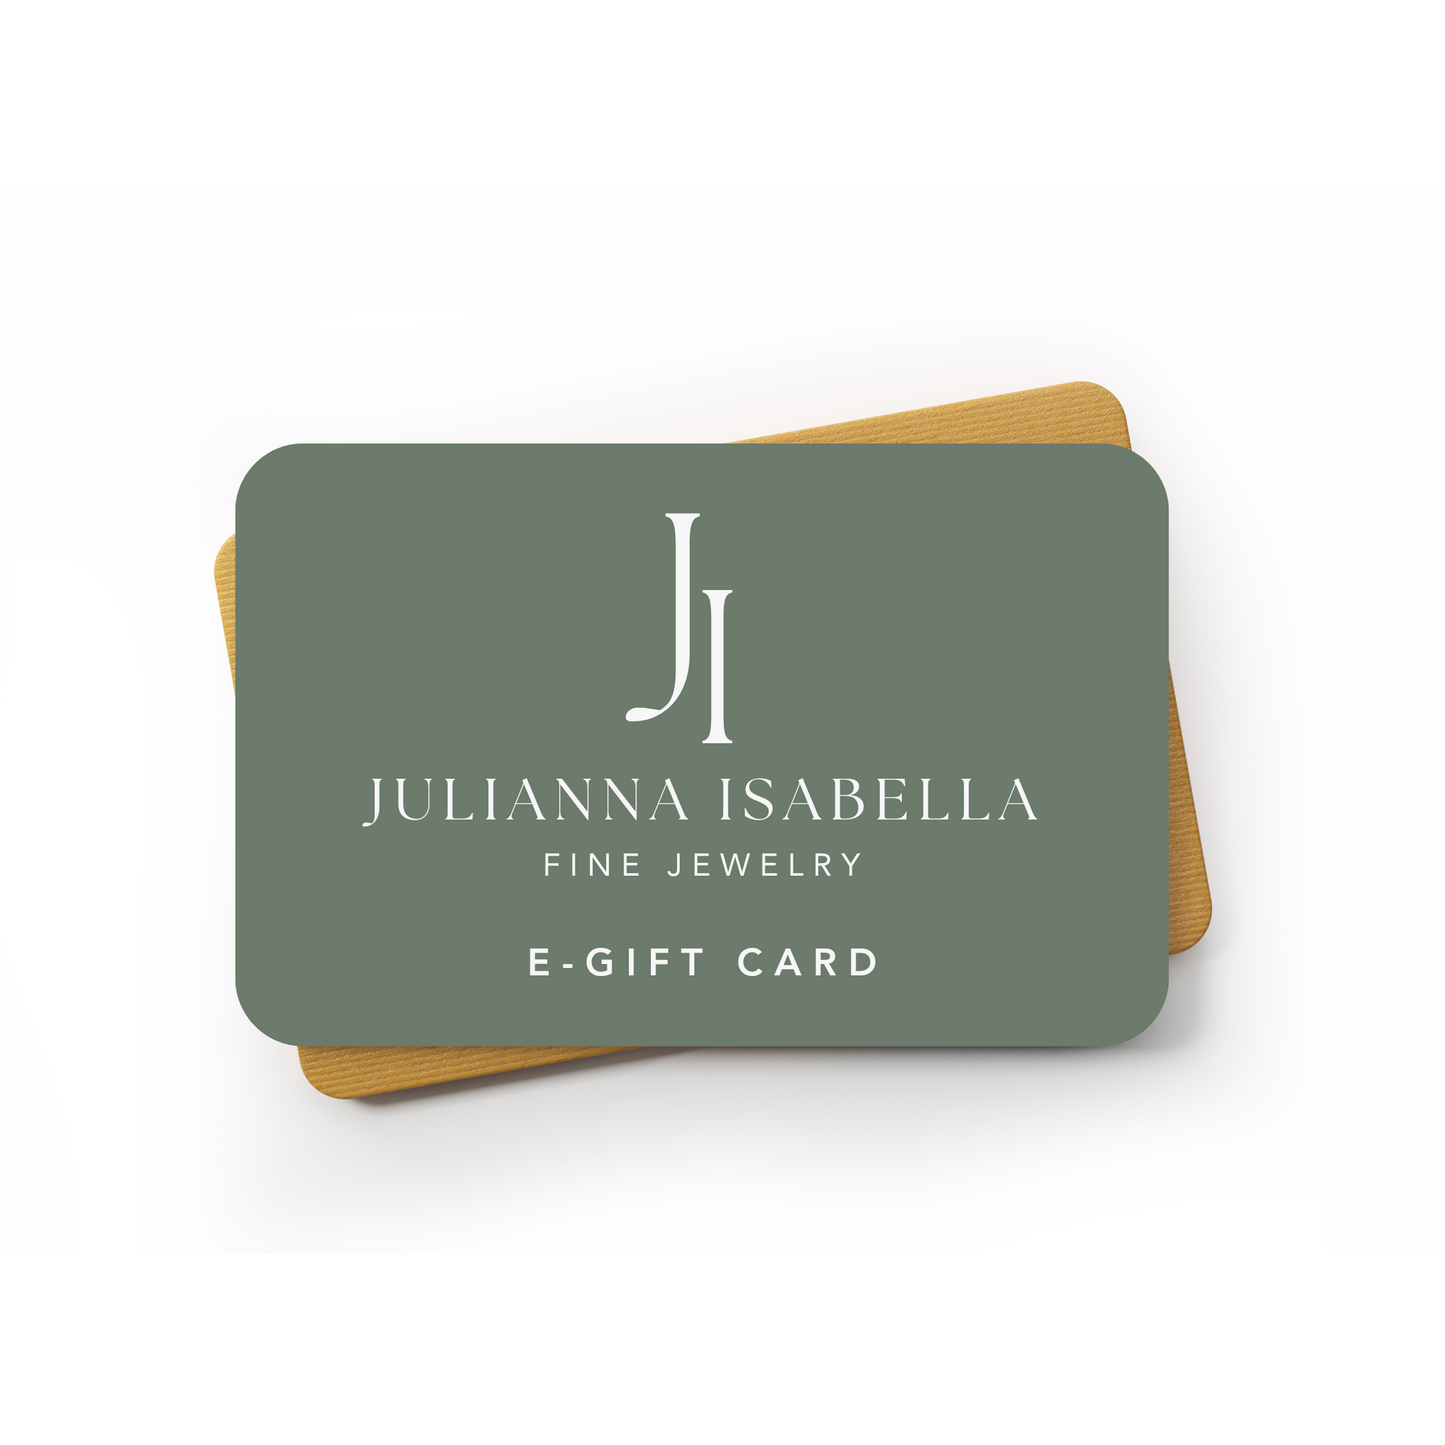 Julianna Isabella E-Gift Card